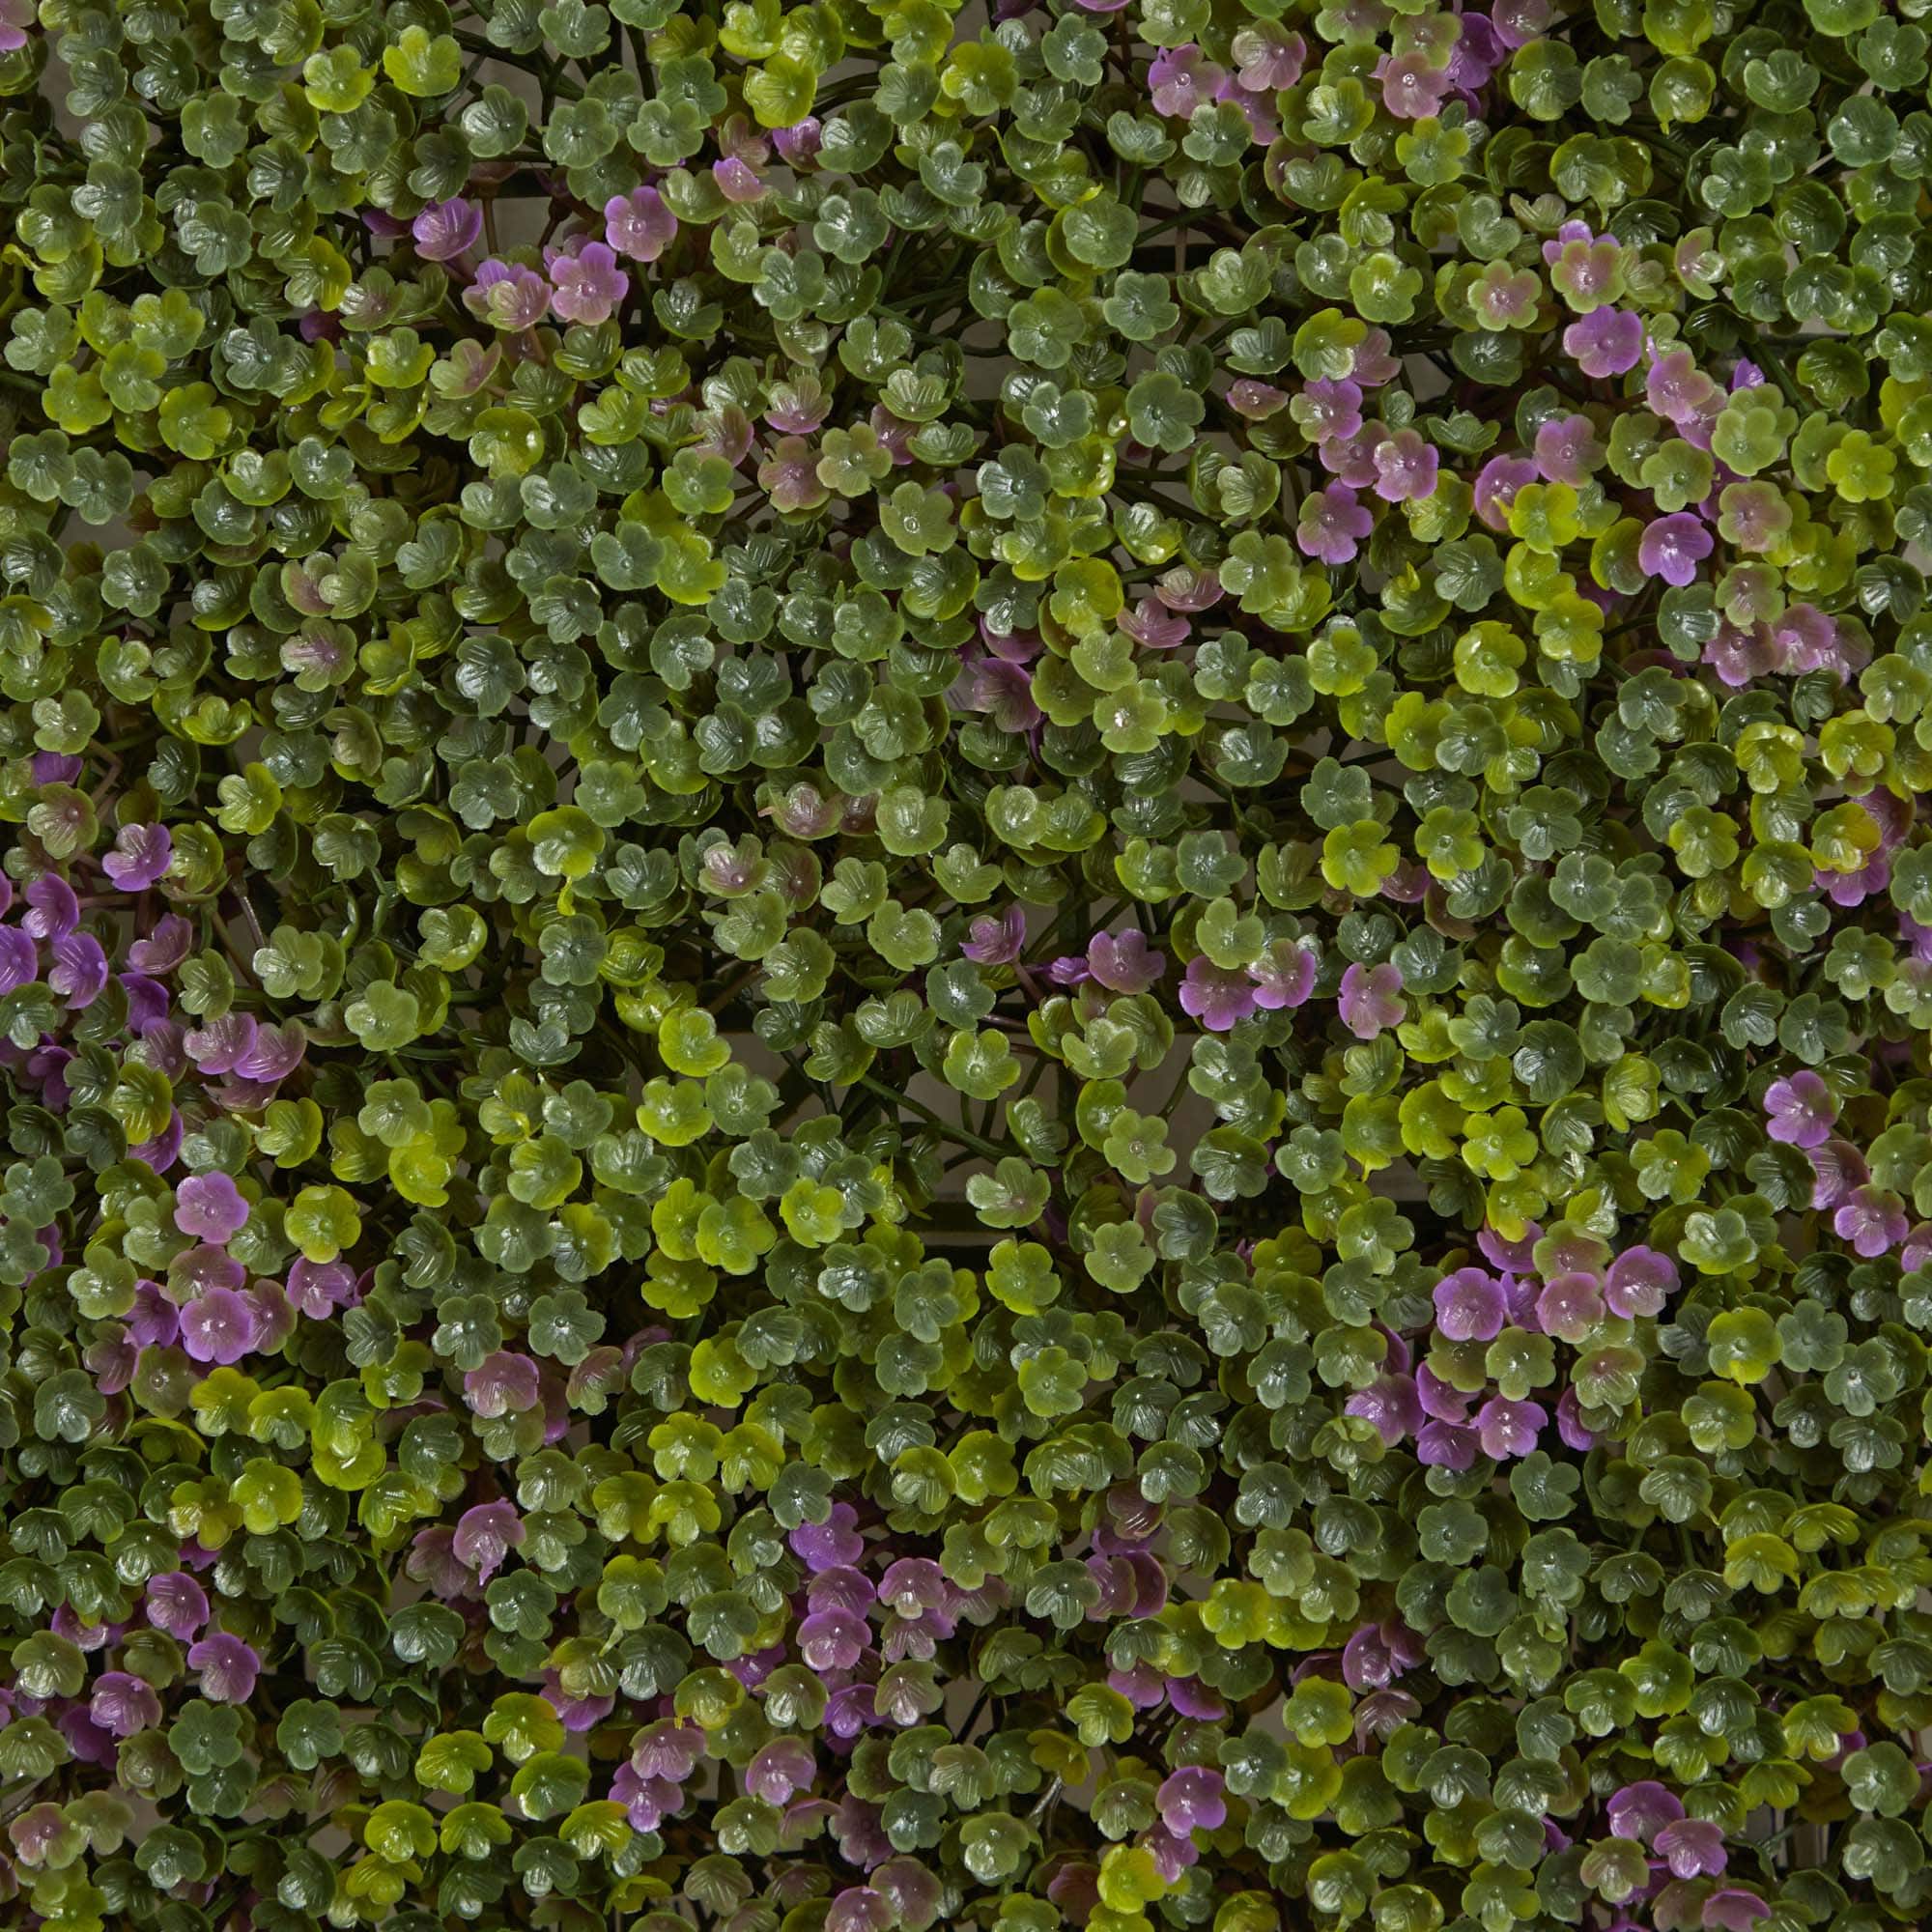 Purple &#x26; Green Clover Mat, 12ct.